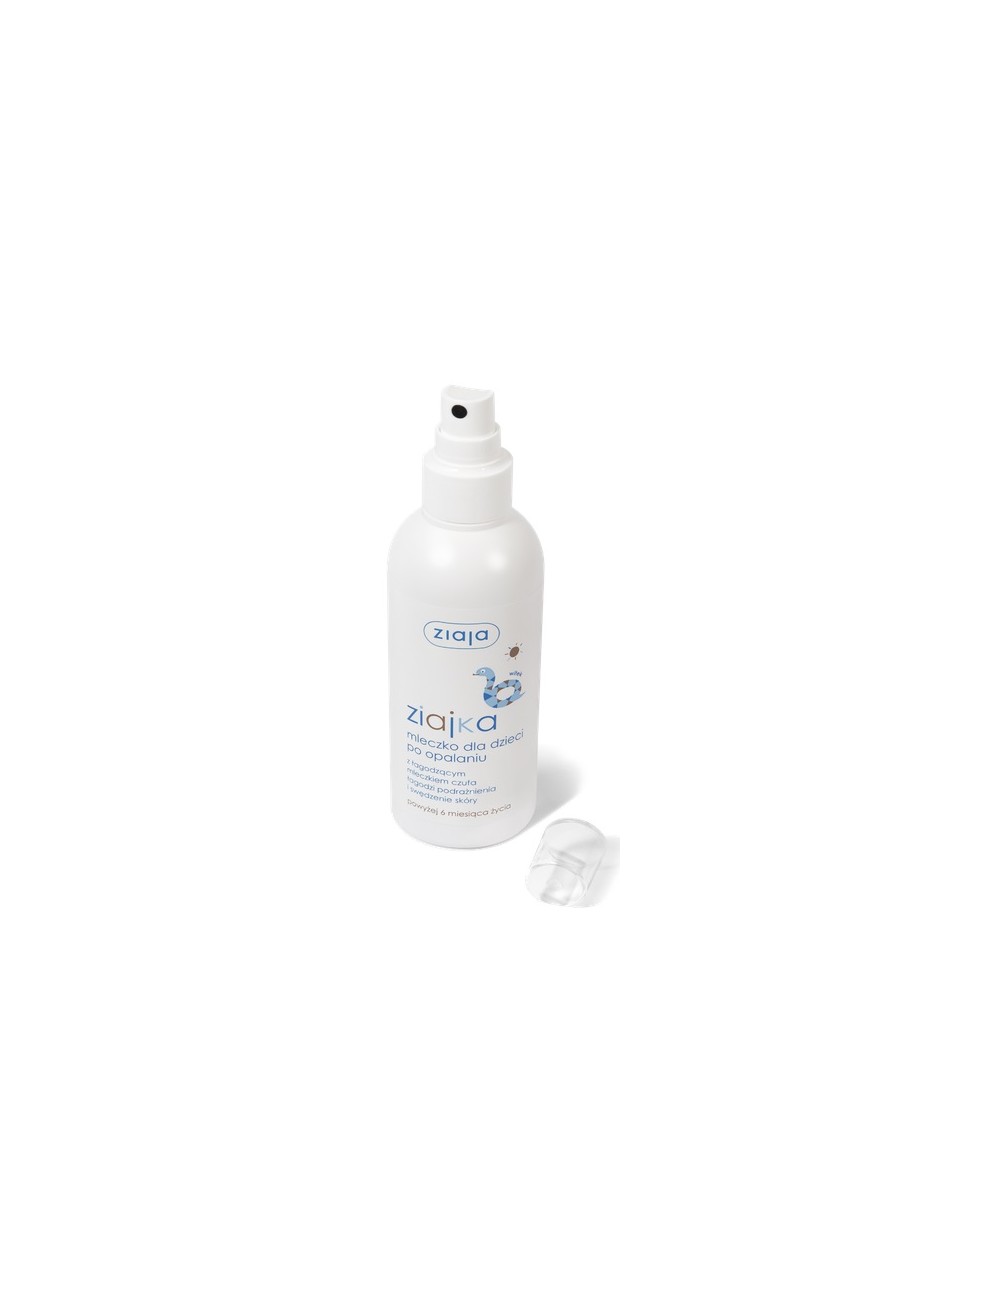 Ziajka Mleczko dla Dzieci po Opalaniu Spray 170 ml – łagodzi podrażnienia i swędzenie skóry